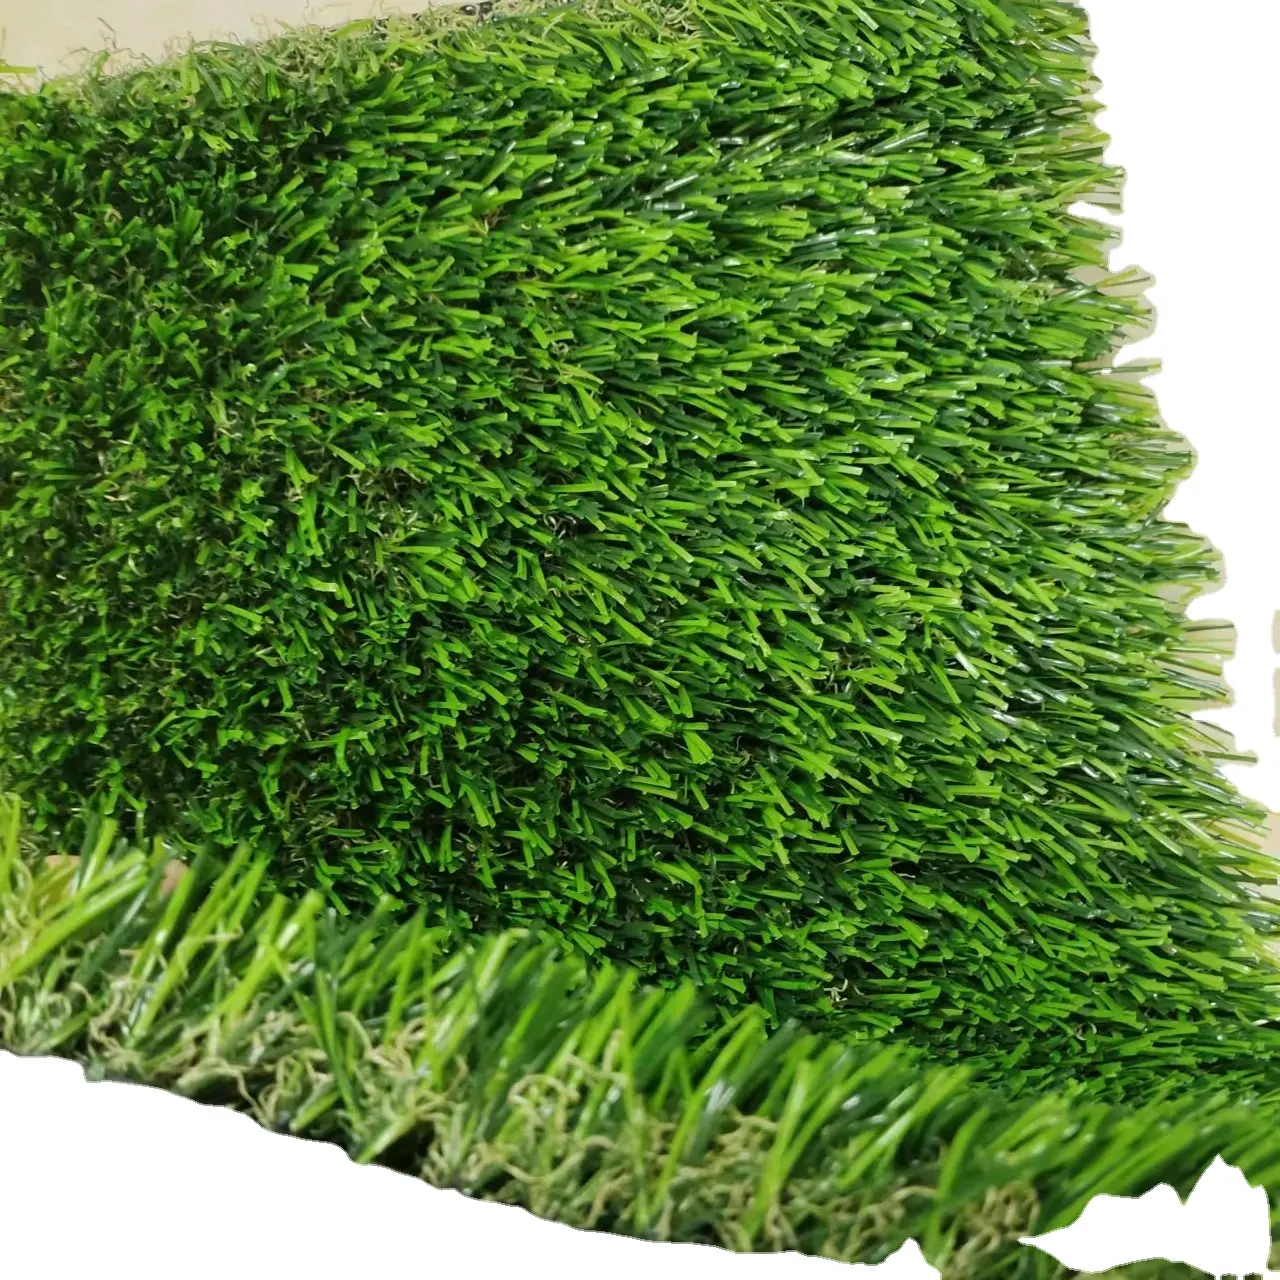 Meisen أفضل المبيعات في الهواء الطلق ديكور حدث داخلي العشب الاصطناعي حديقة المناظر الطبيعية العشب في جميع الأحوال الجوية أخضر اللون العشب الطبيعي